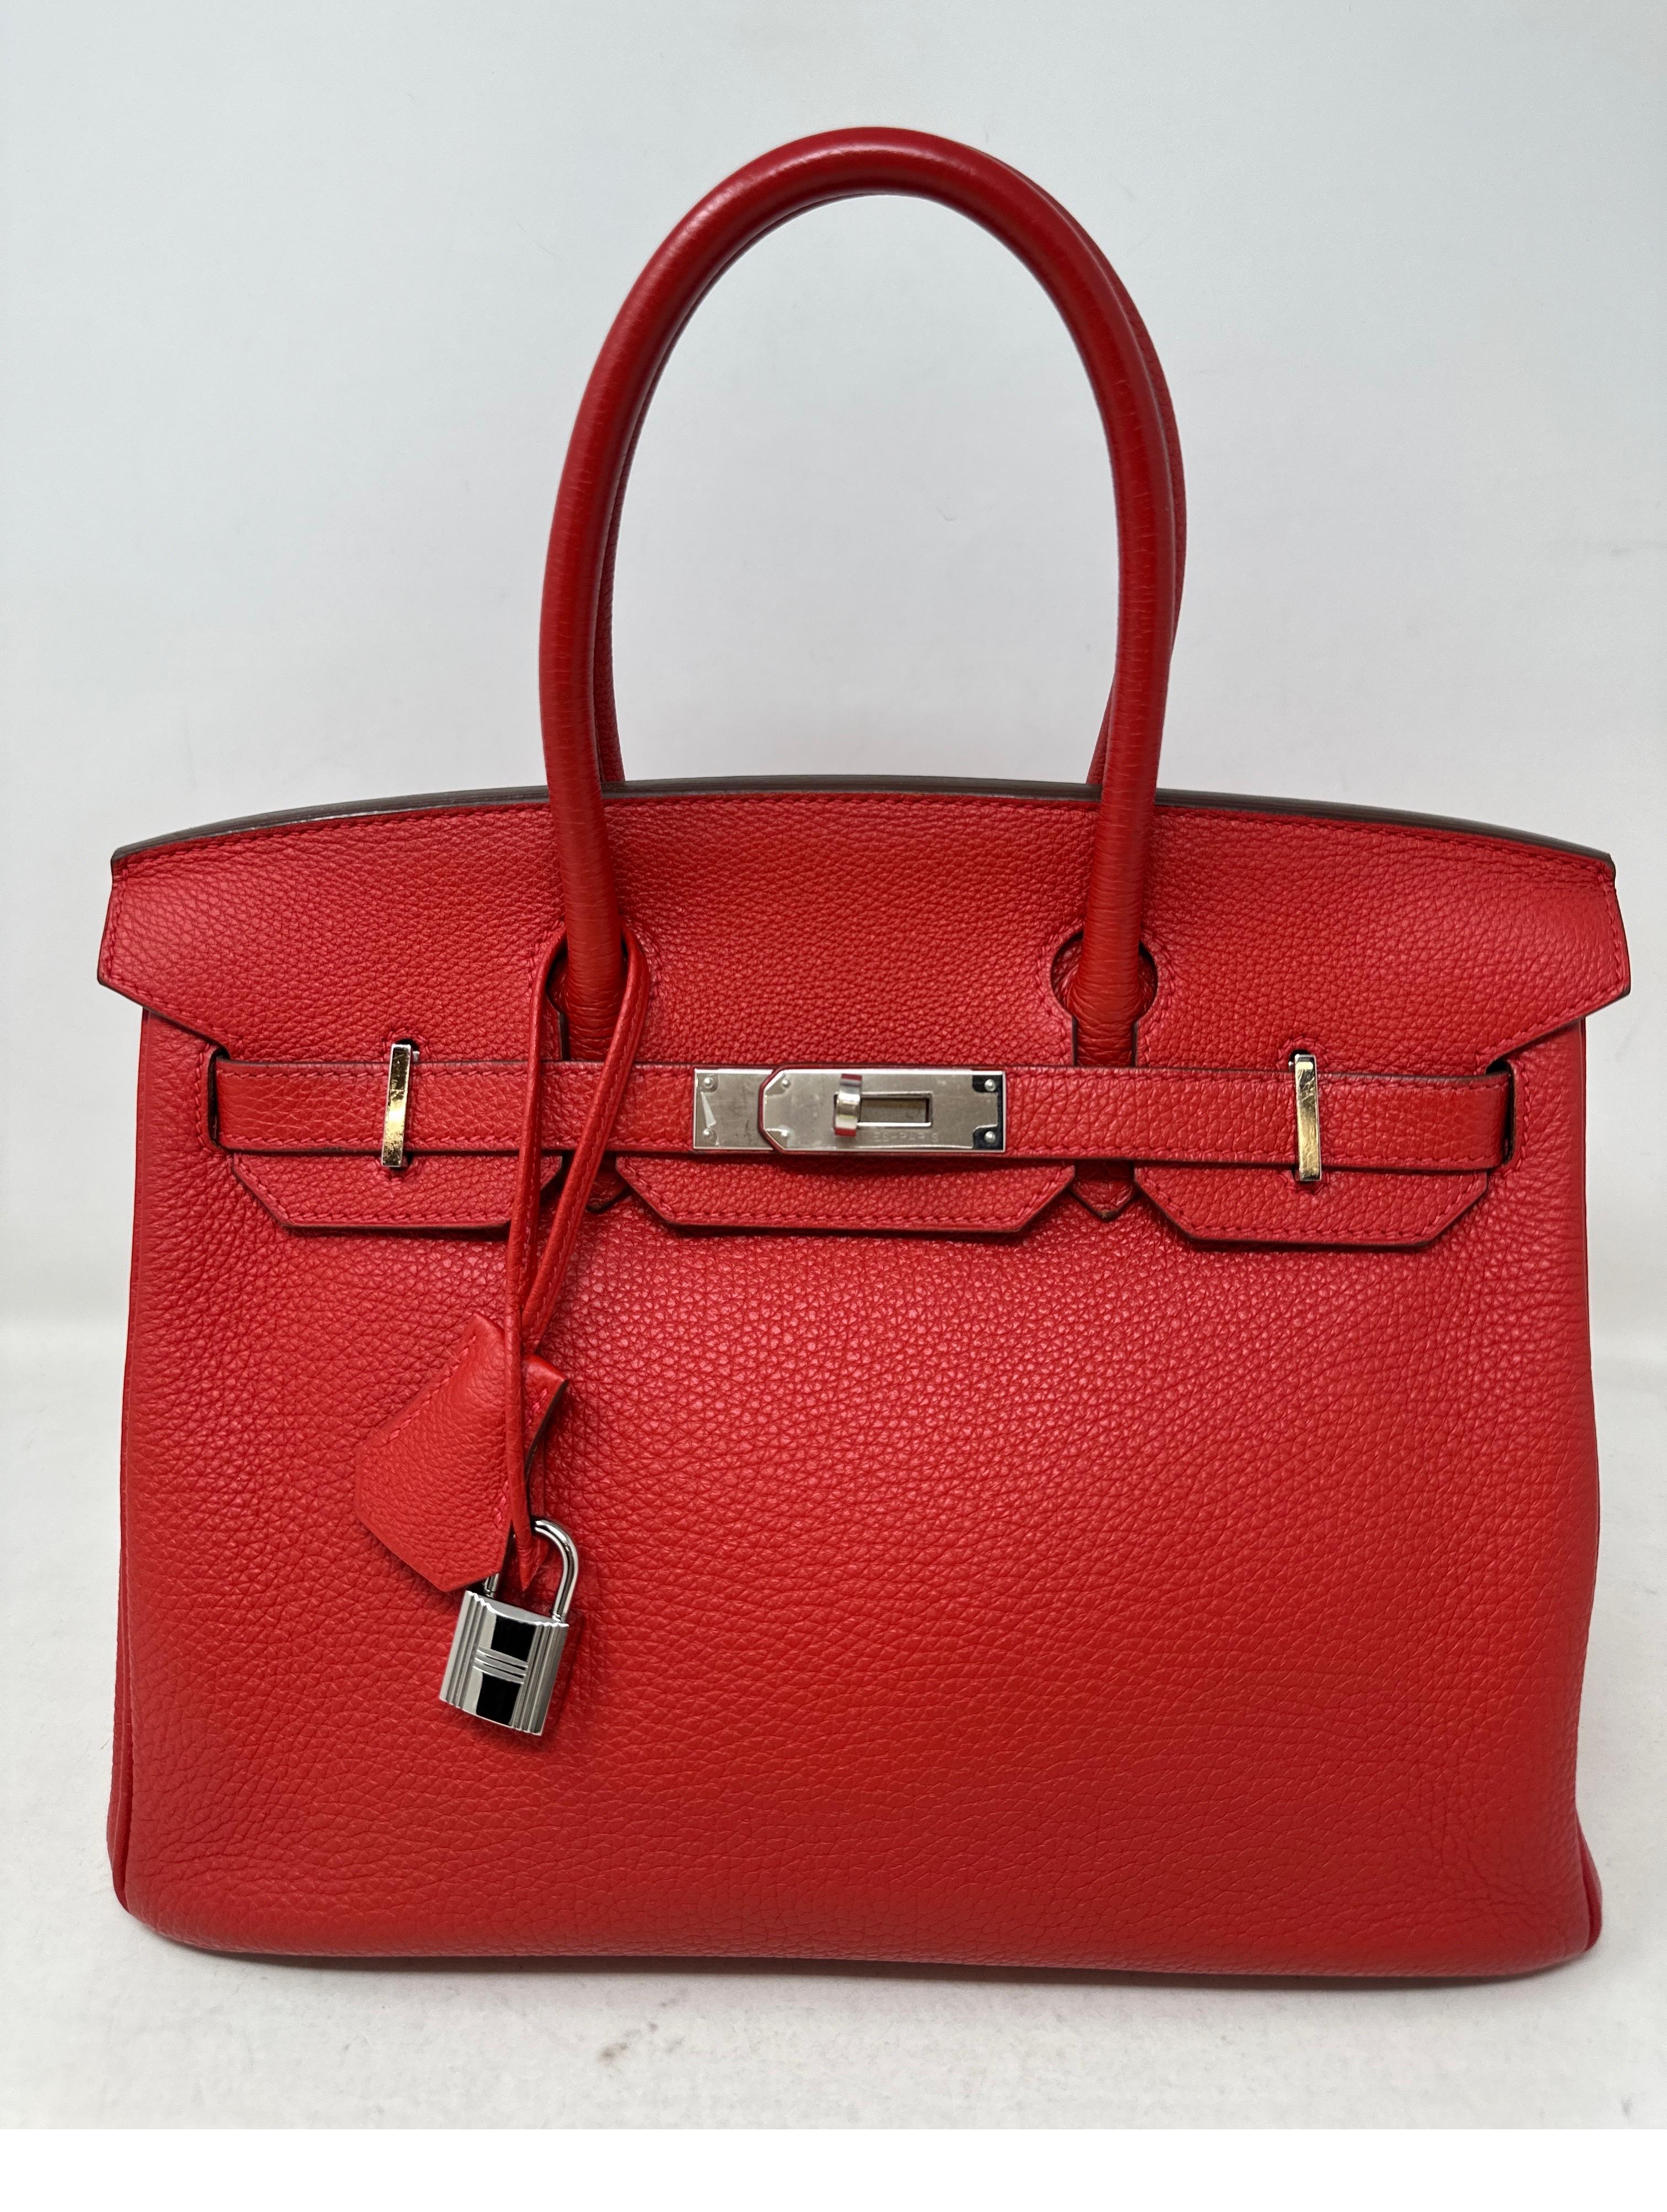 Hermès - Sac Birkin 30 Rouge Garance  9